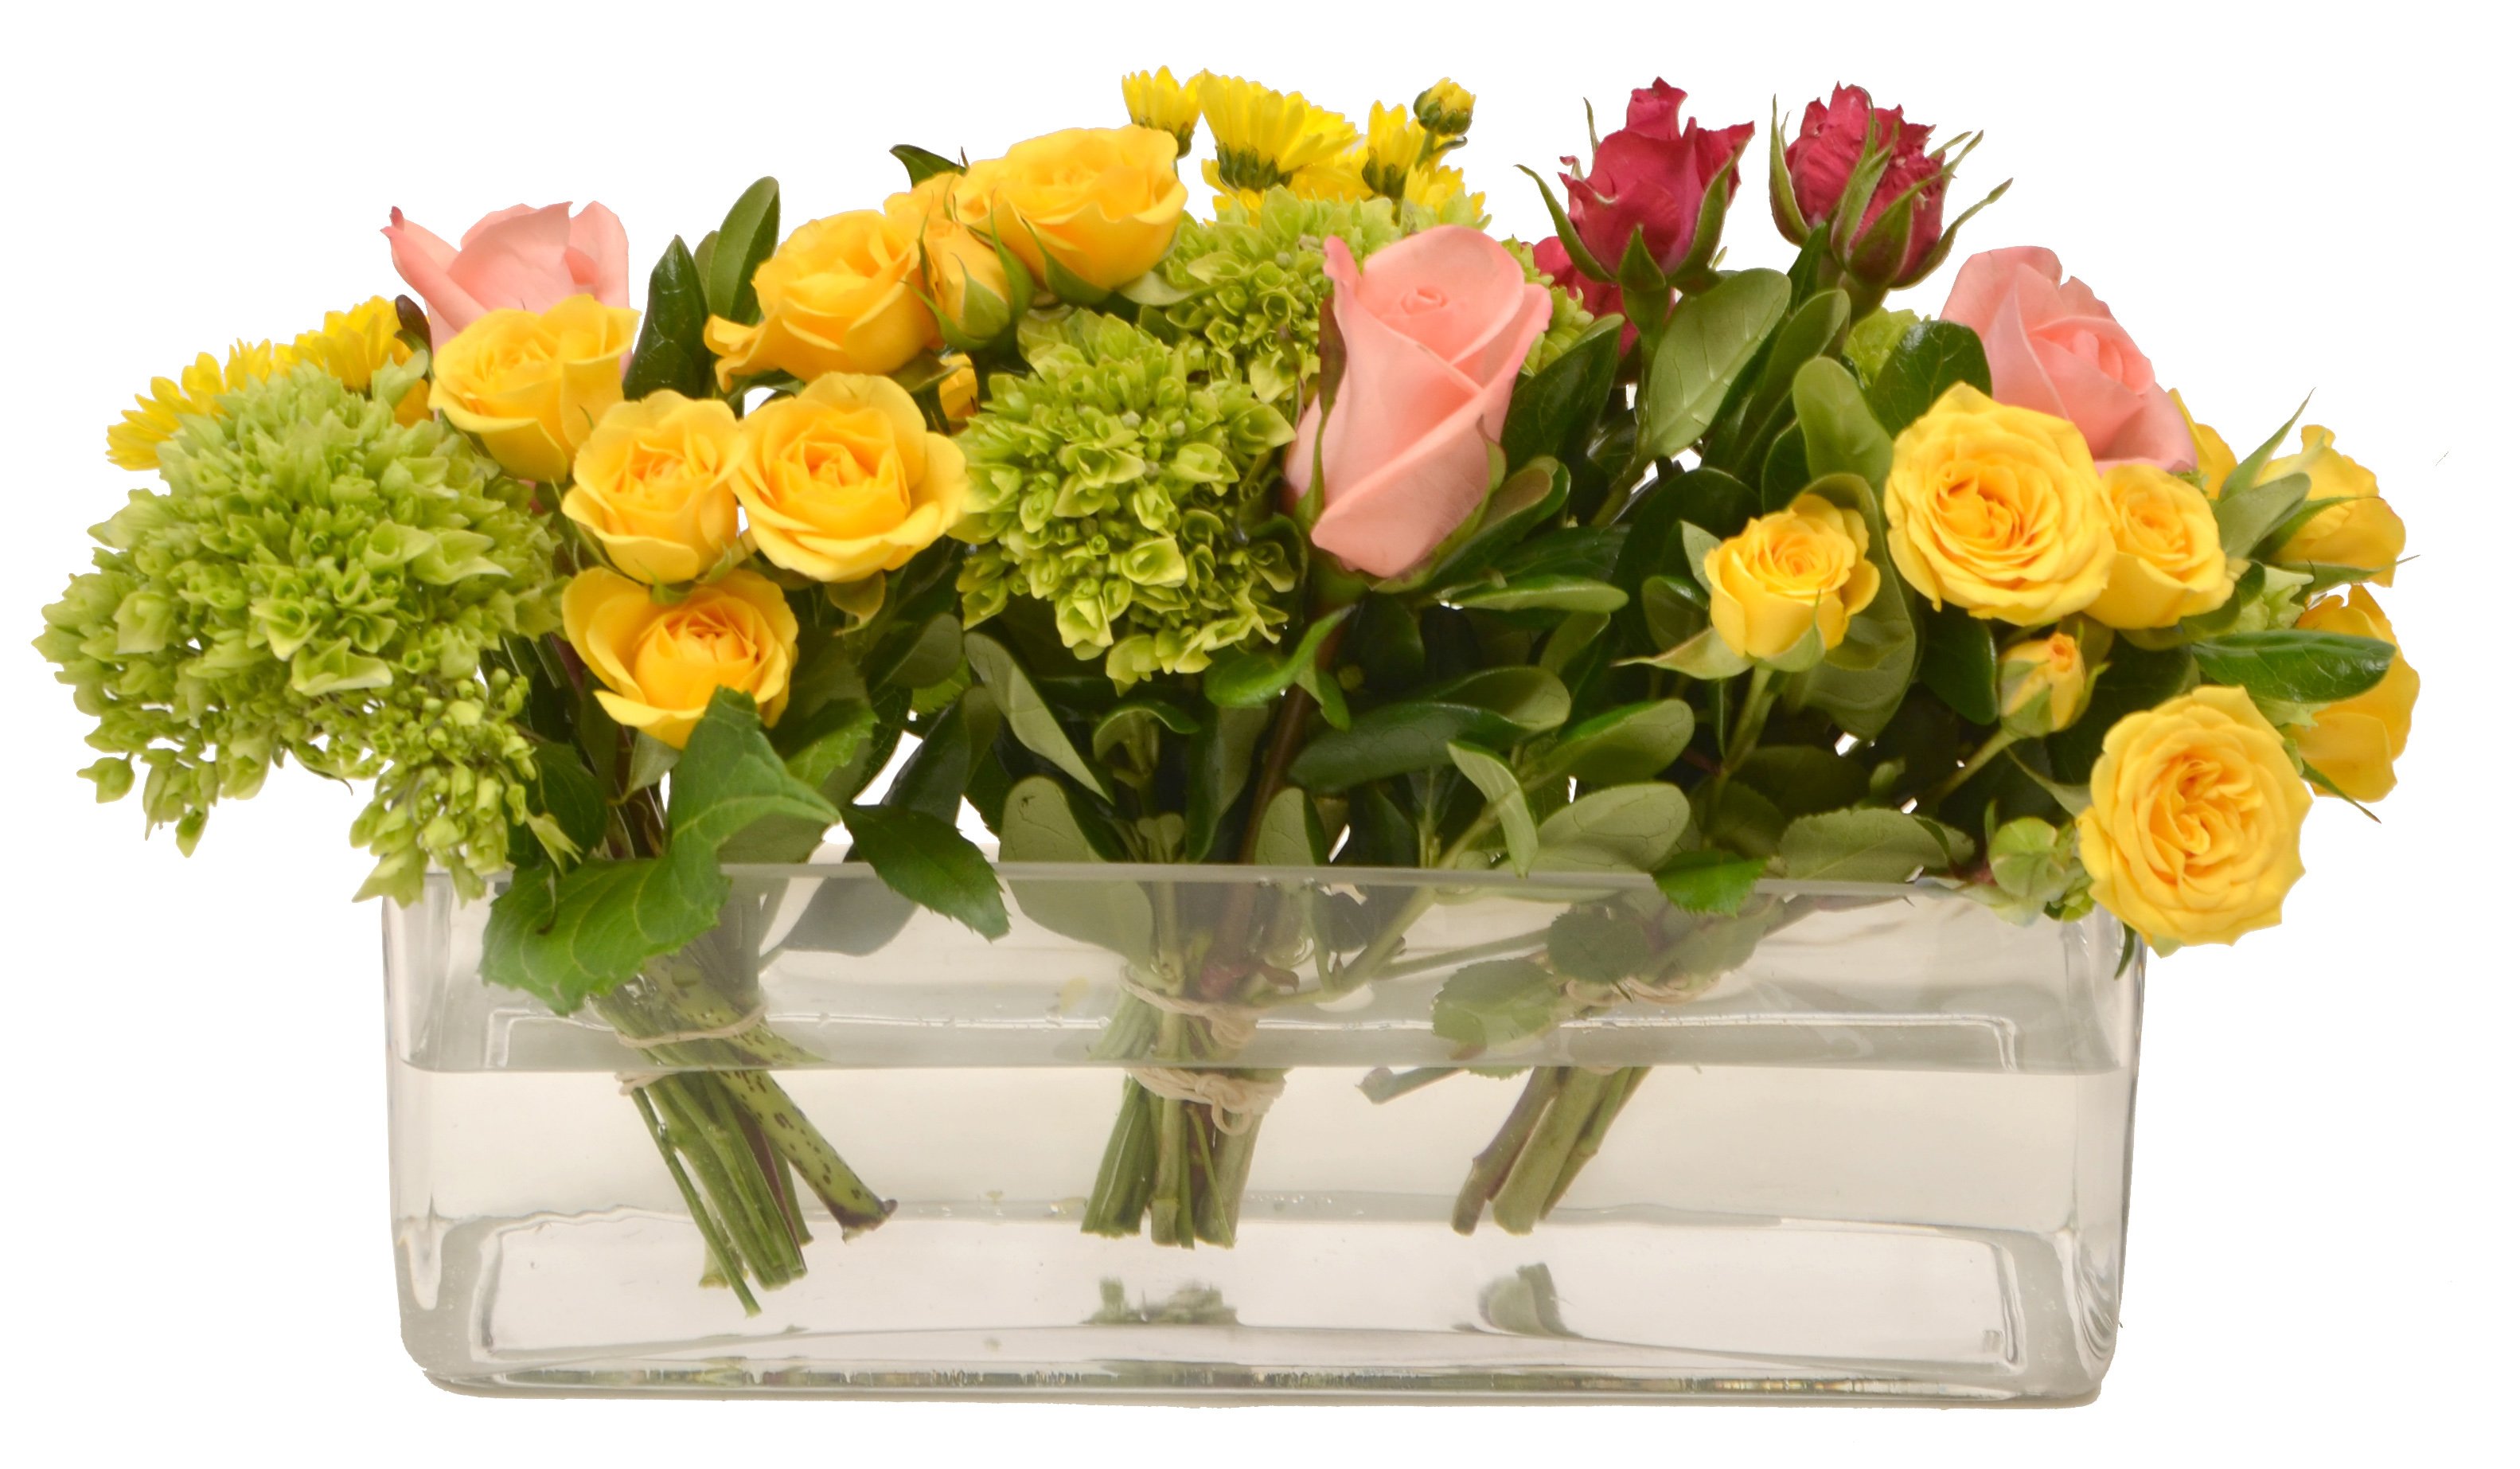 Floral Triple Tussie Arrangement - Shop Flowers & Arrangements at H-E-B